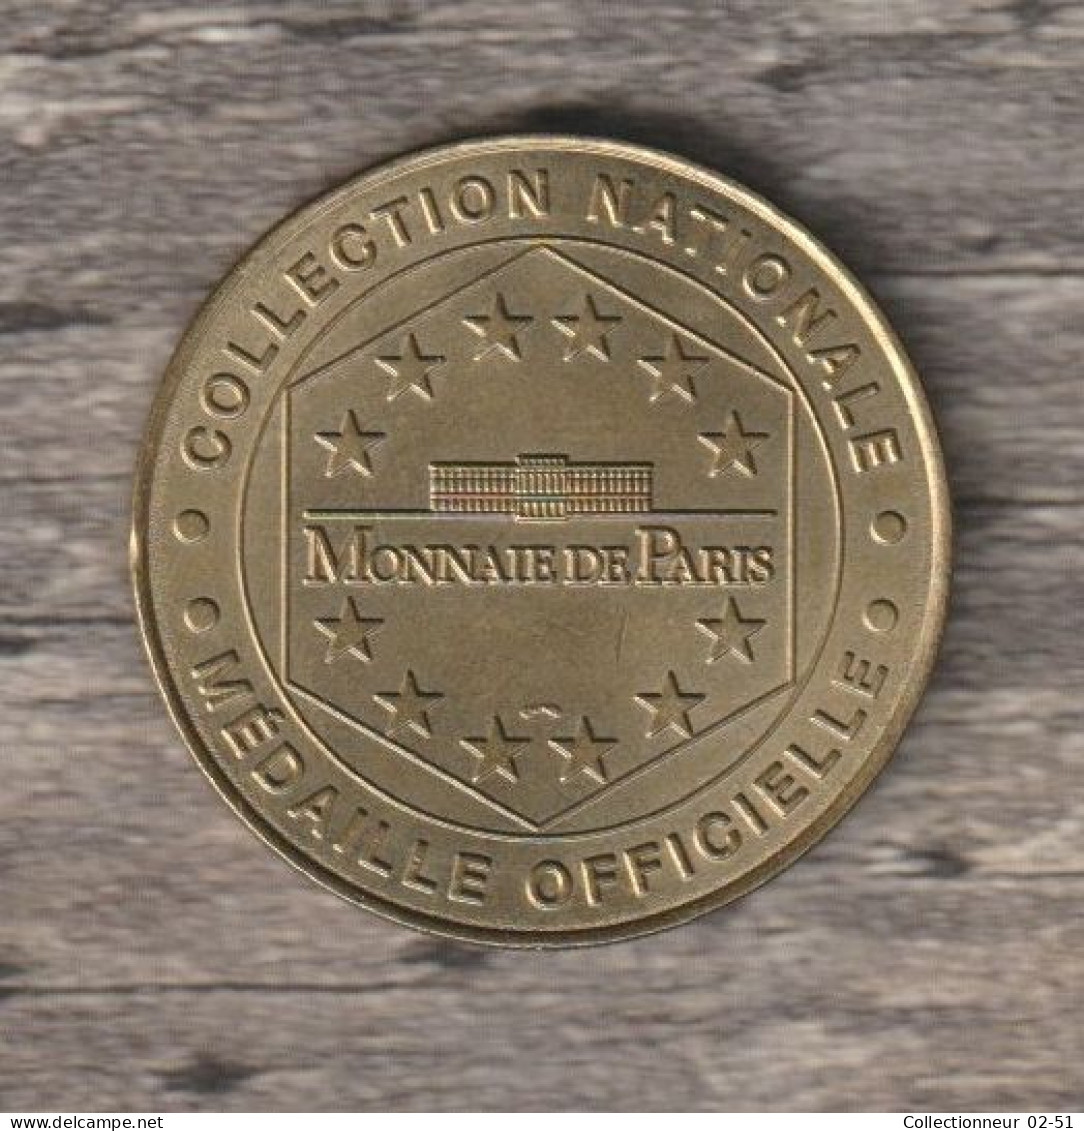 Monnaie De Paris : Futuroscope Le Parc Européen De L'image - 1999 - Undated